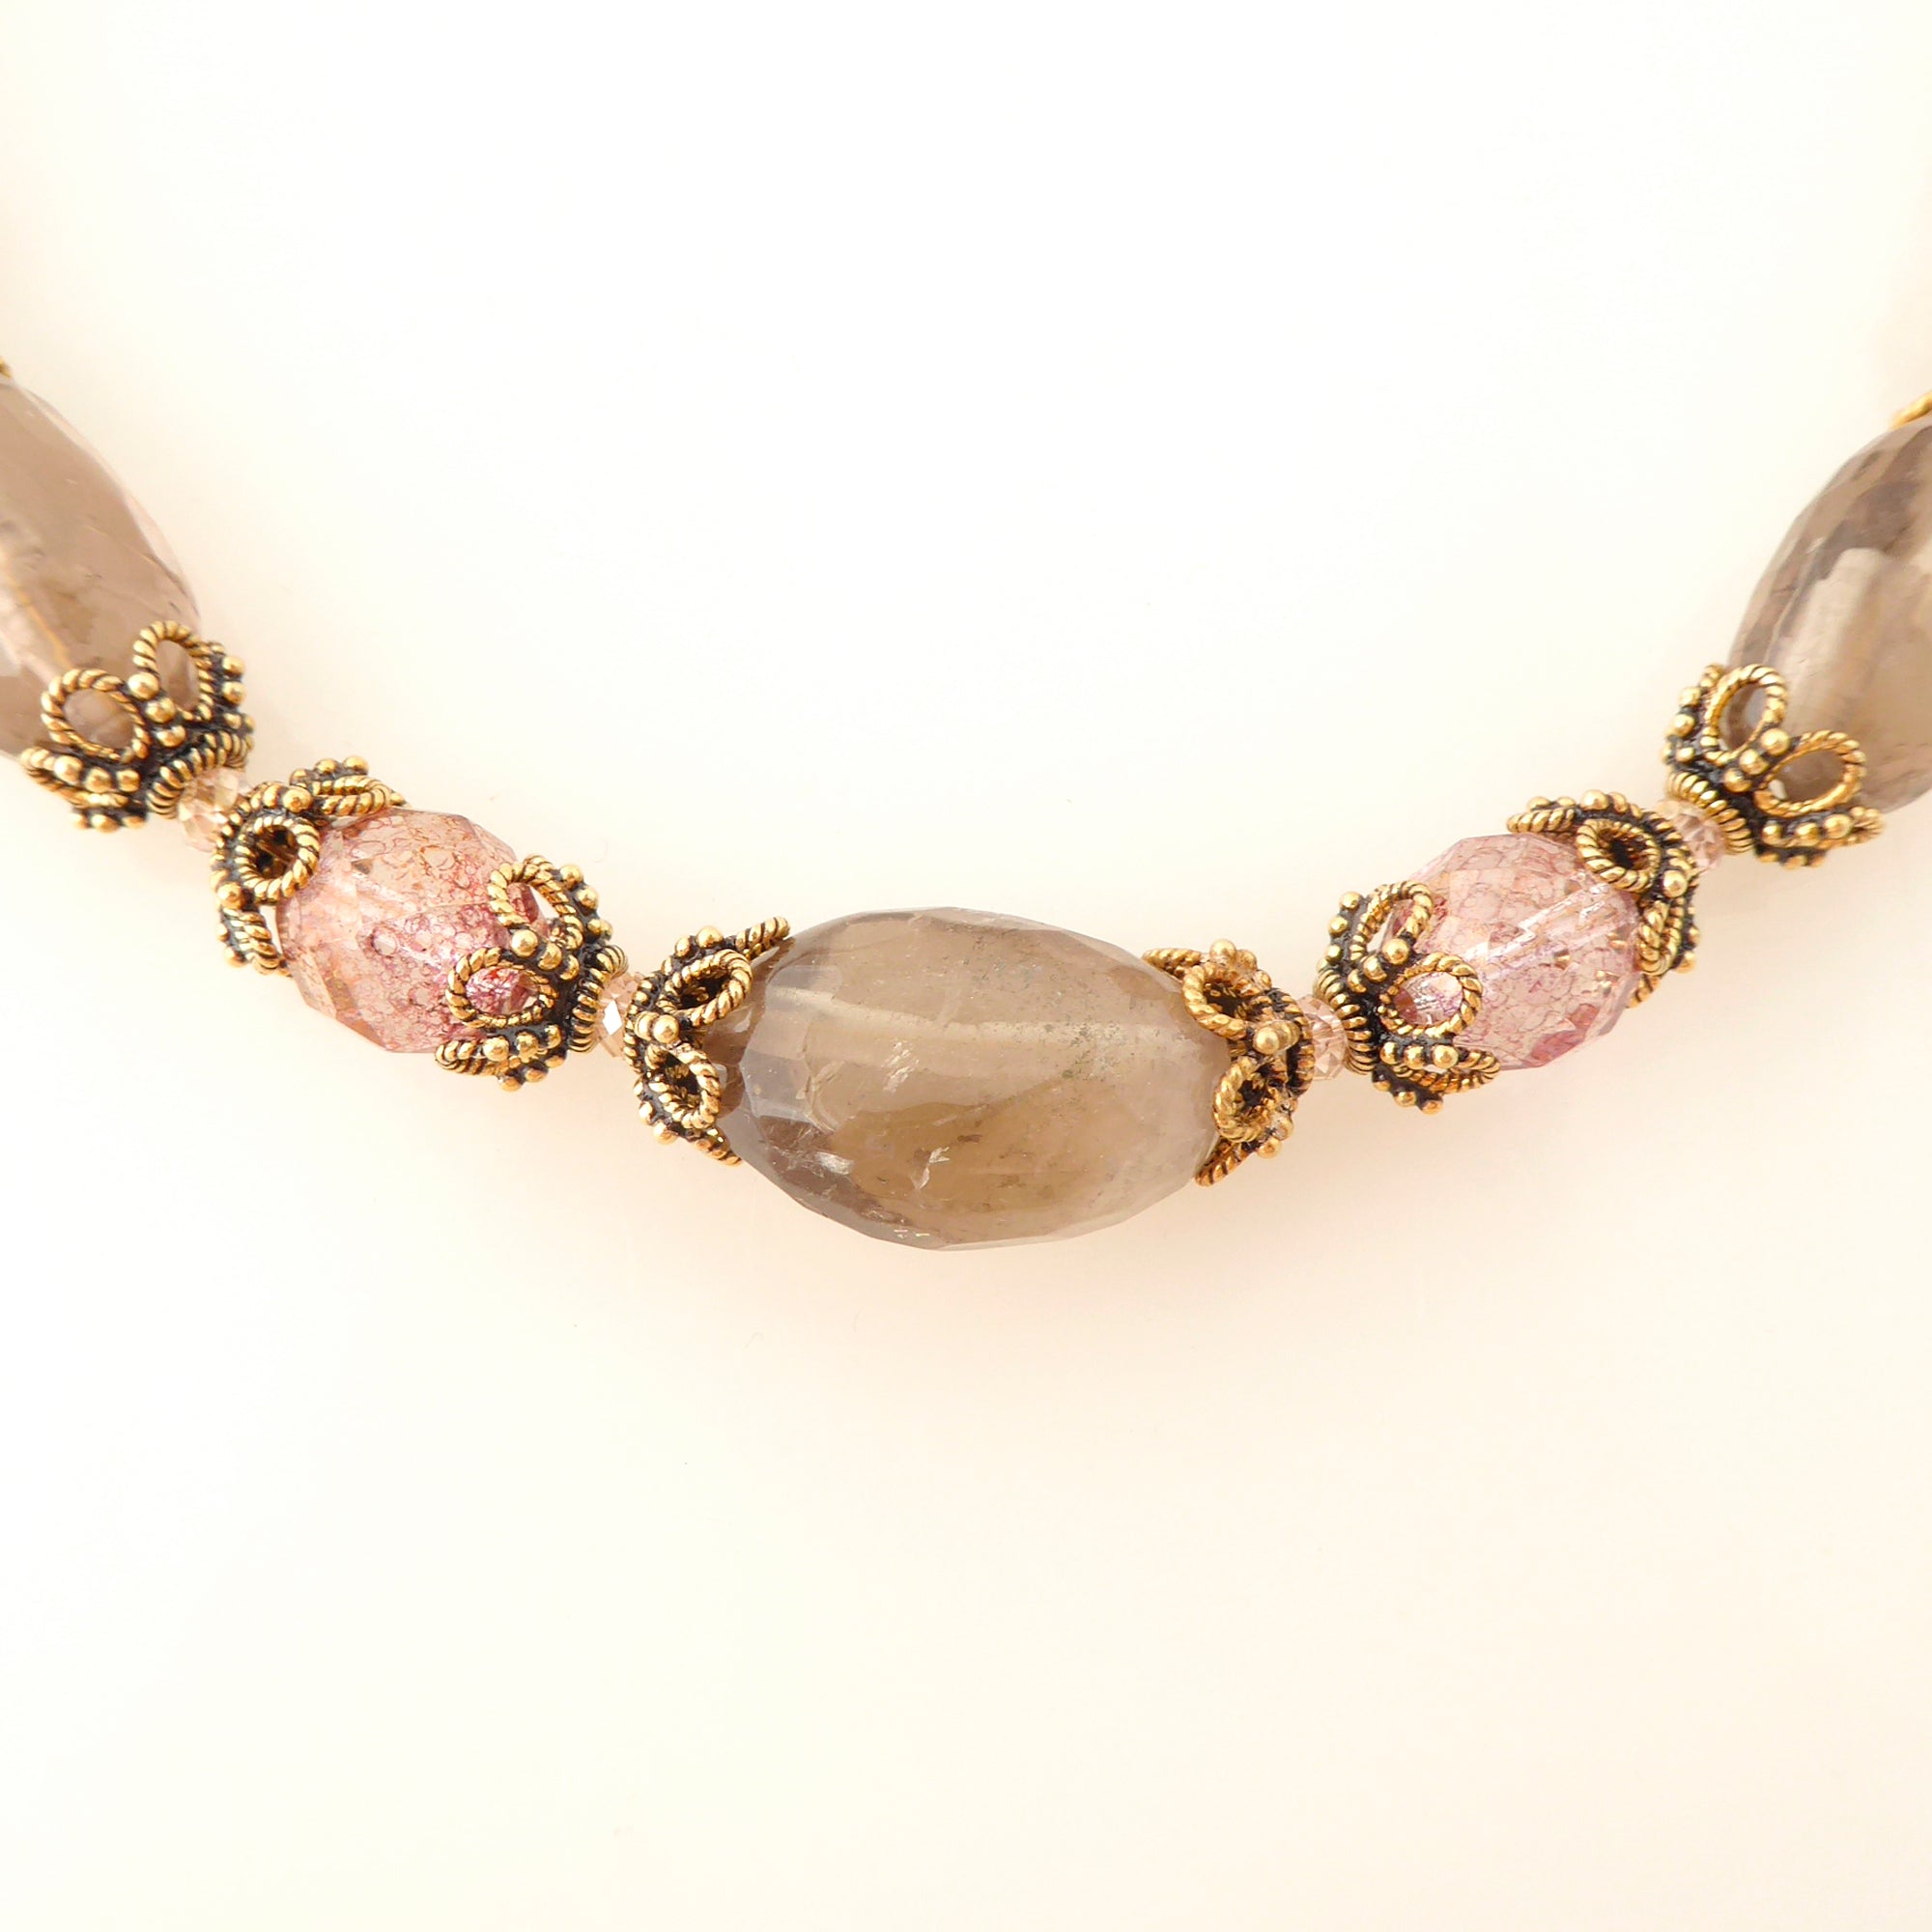 Greige quartz rococo necklace by Jenny Dayco 4